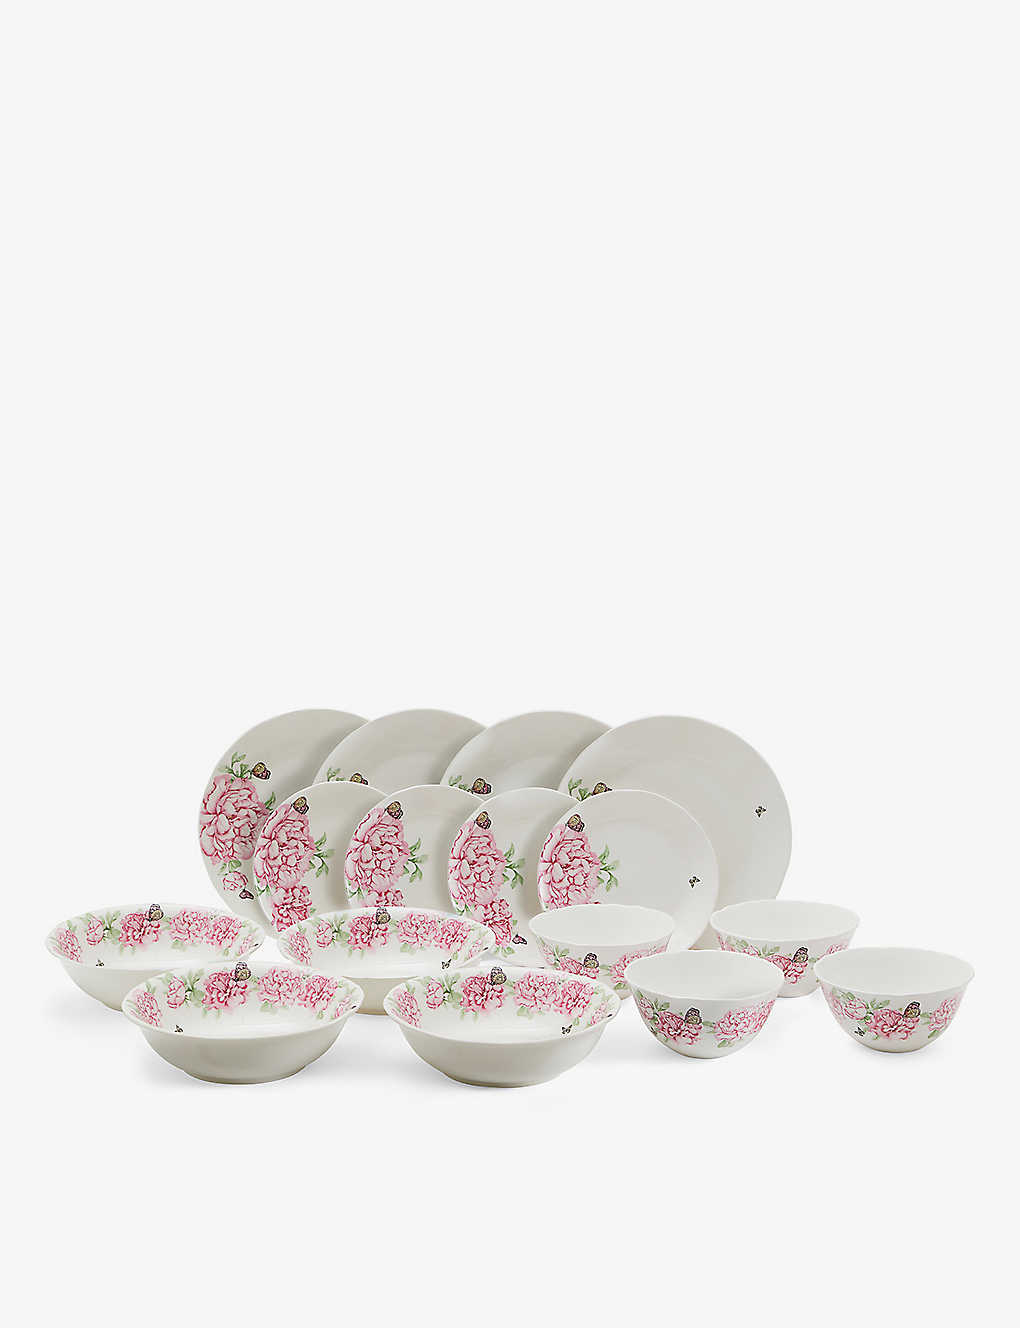 Royal Albert X Miranda Kerr Everyday Porcelain Dinnerware Set In Pink